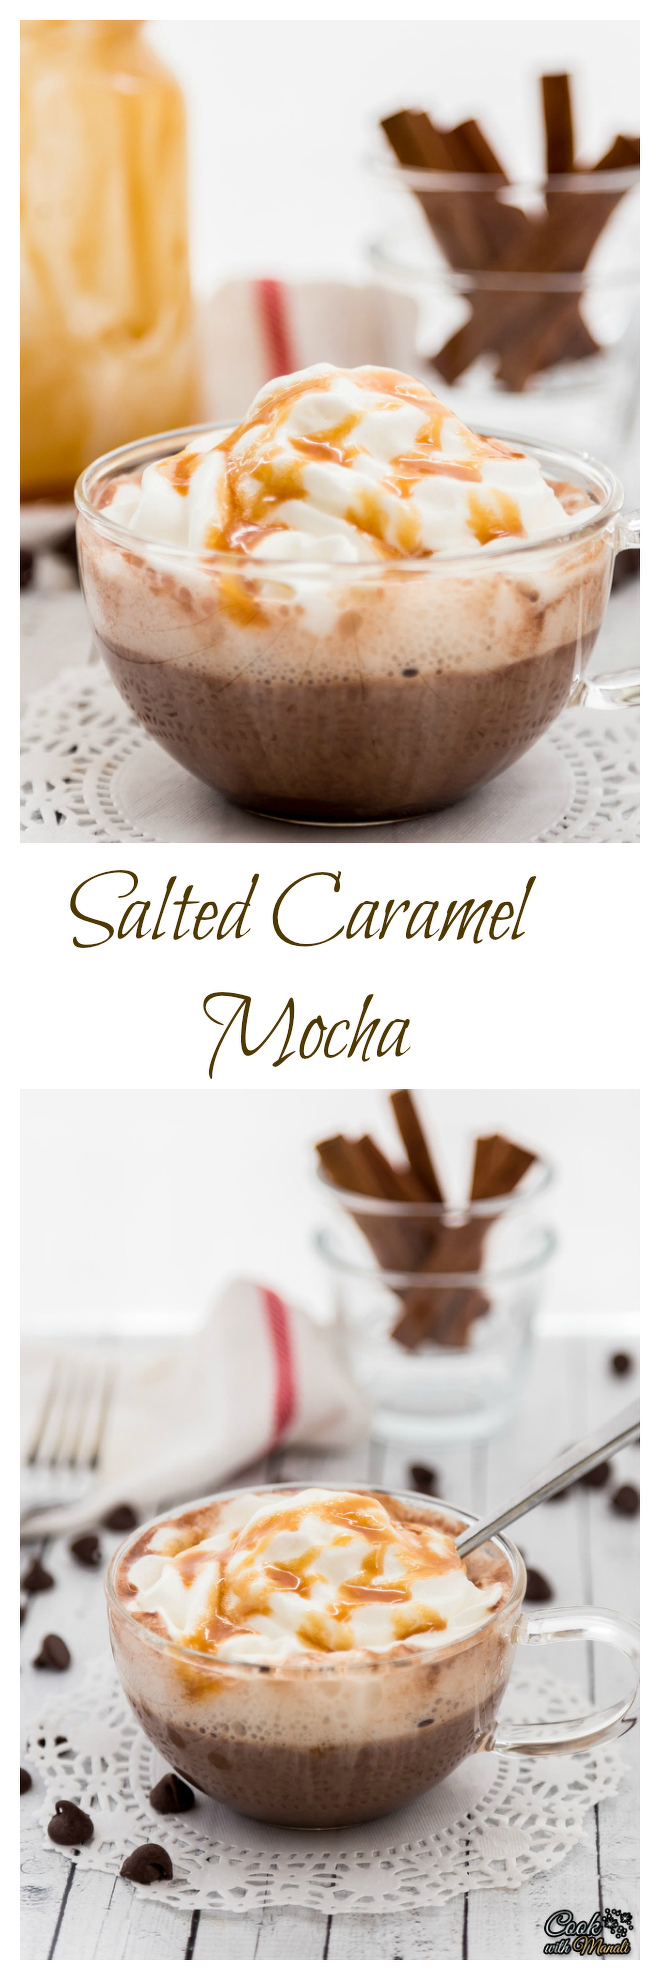 Salted Caramel Mocha Collage-nocwm